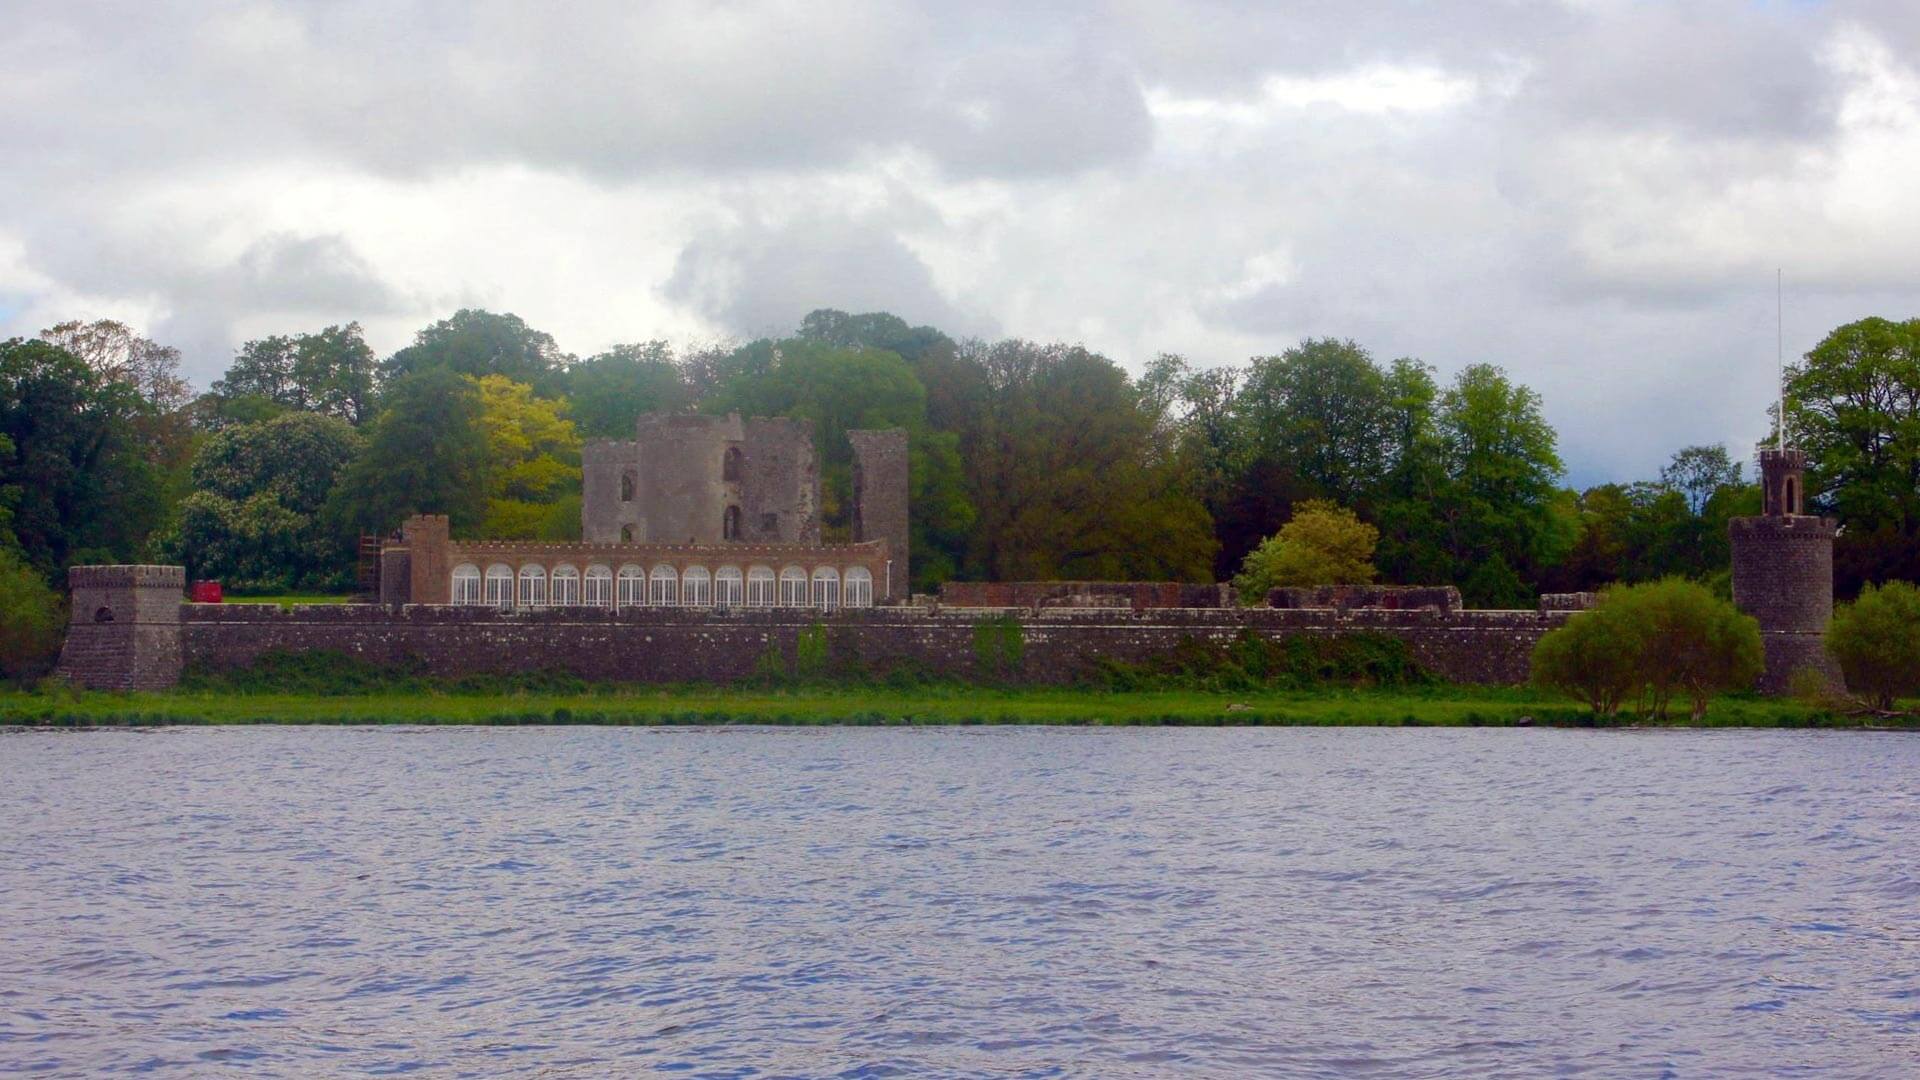 Shanes Castle Lough Trip with Abhainn Cruises